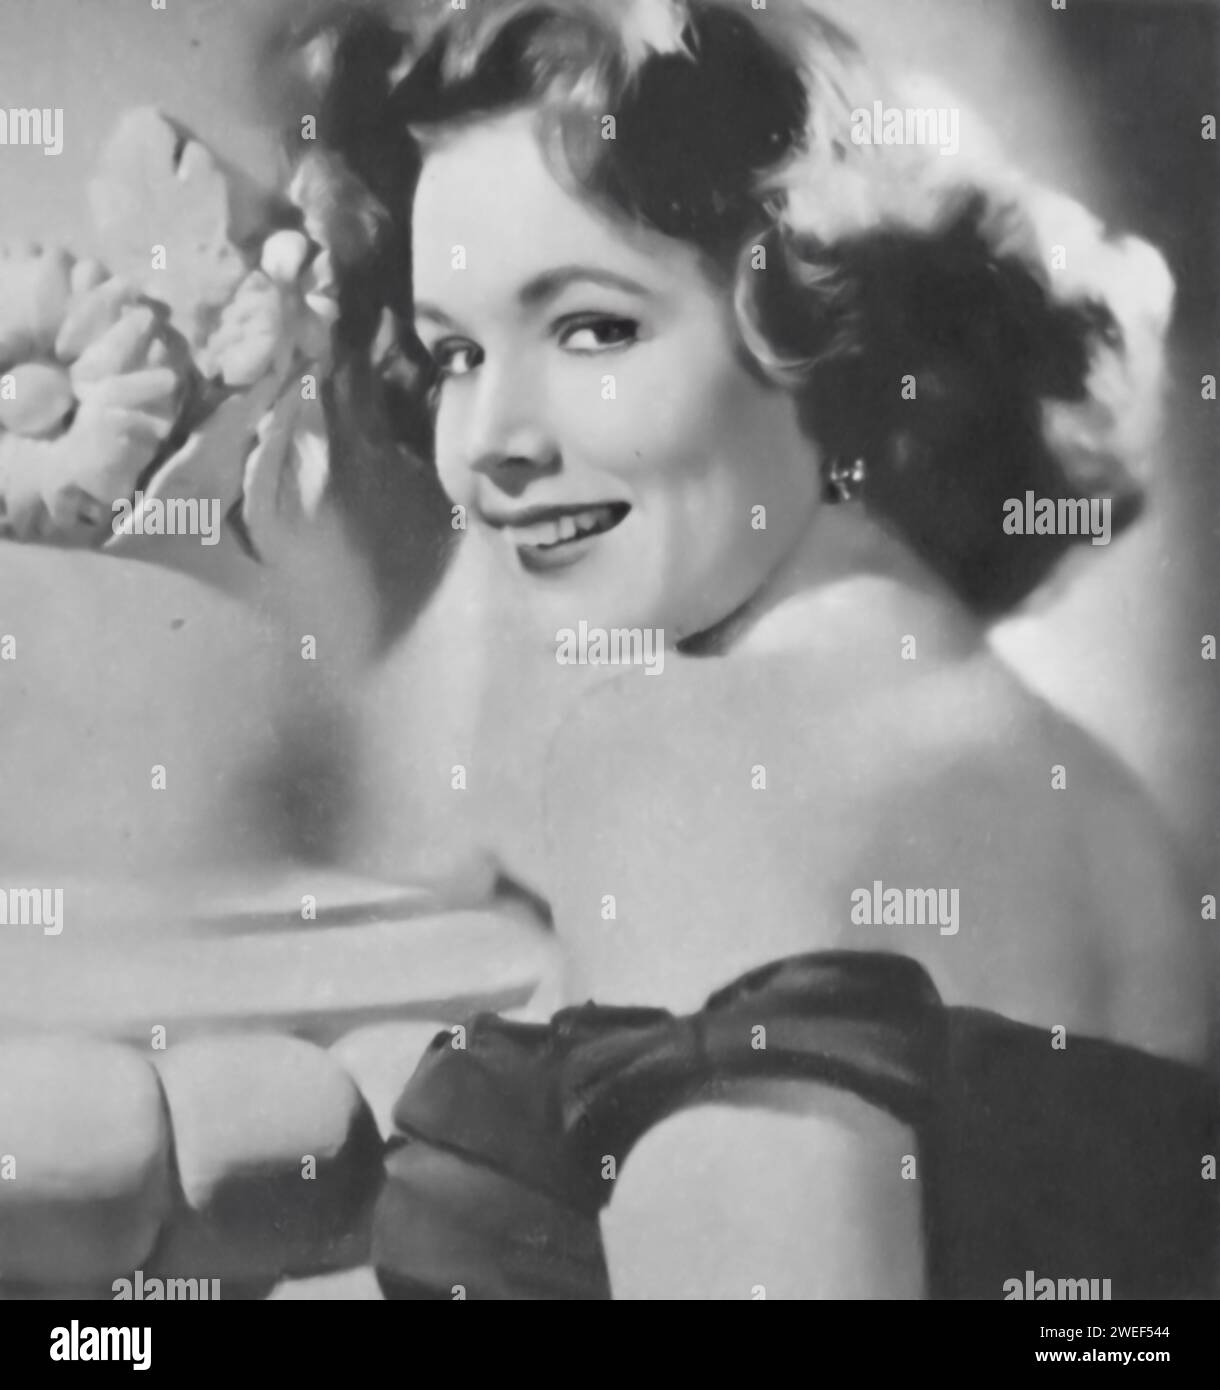 Portrait de l'actrice Piper Laurie, célèbre pour ses rôles dans des films tels que "le Prince qui était un voleur" (1951). Dans cette aventure de swashflambing, Laurie joue Princesse Yasmin, un personnage captivant et de forte volonté qui devient romantiquement impliqué avec le personnage de Tony Curtis, Julna. Banque D'Images